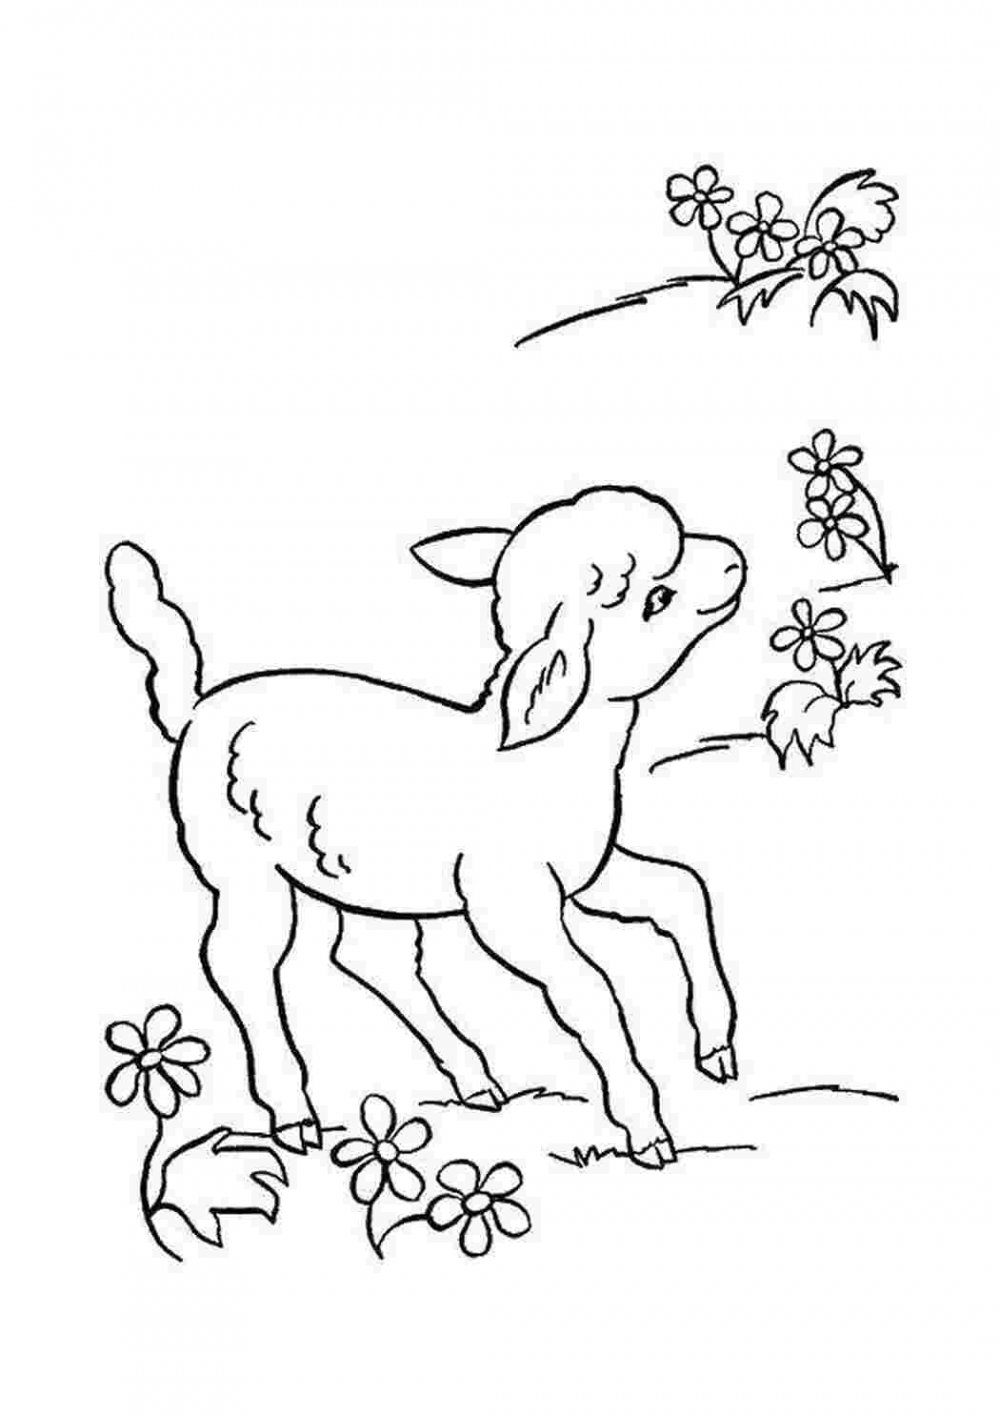 Раскраска коза с козлятами